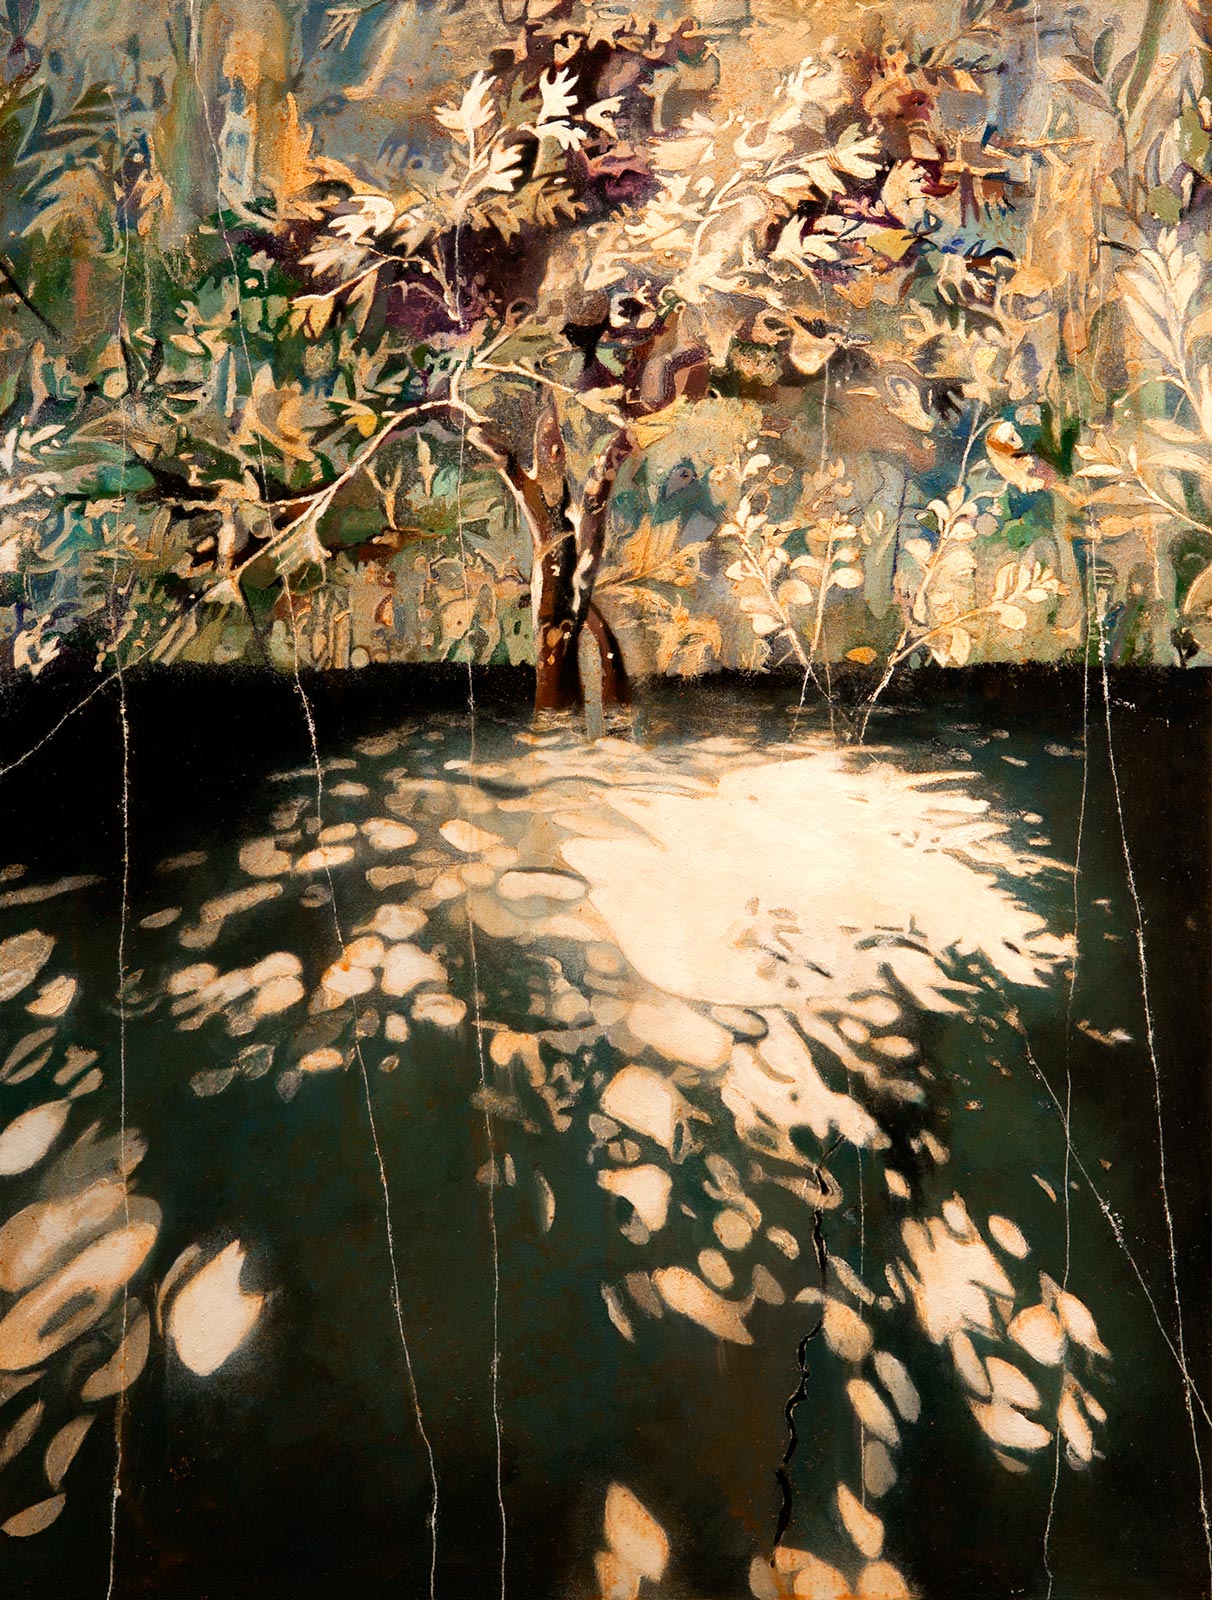 Lisa D Manner, "Limelight", 2016, oil on panel, 40 x 30 cm